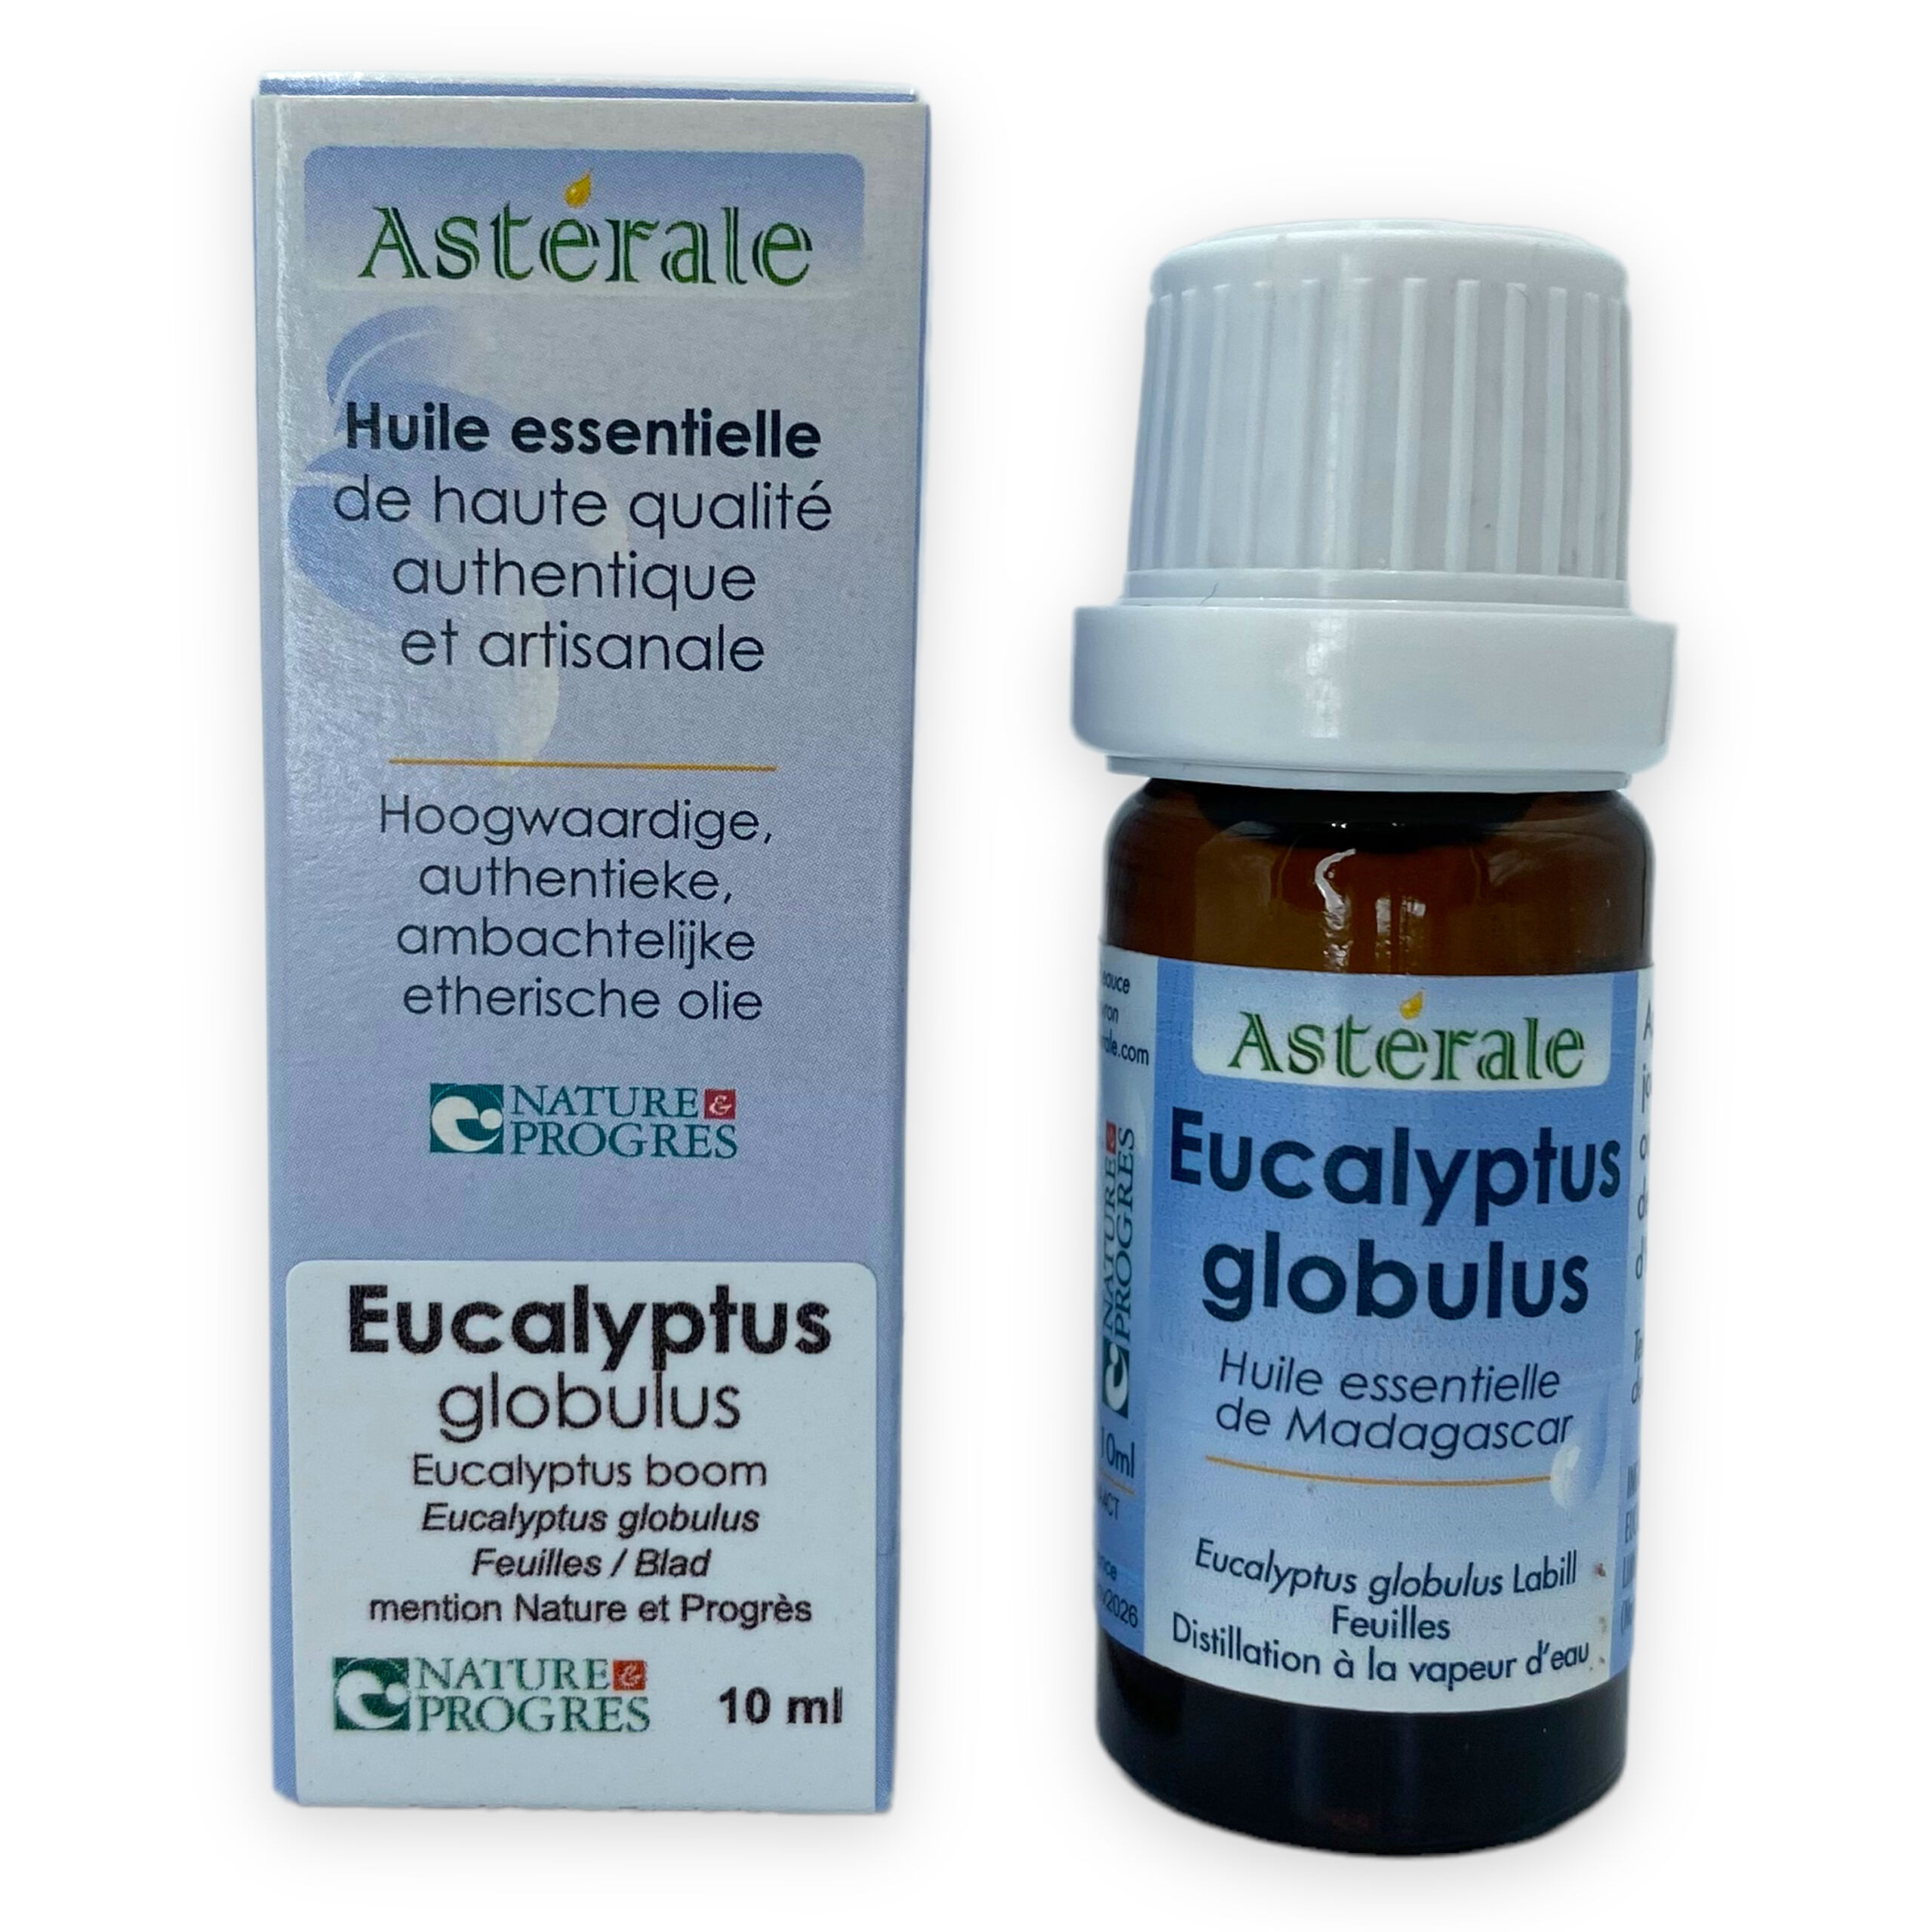 Huile Essentielle d'Eucalyptus globulus Astérale